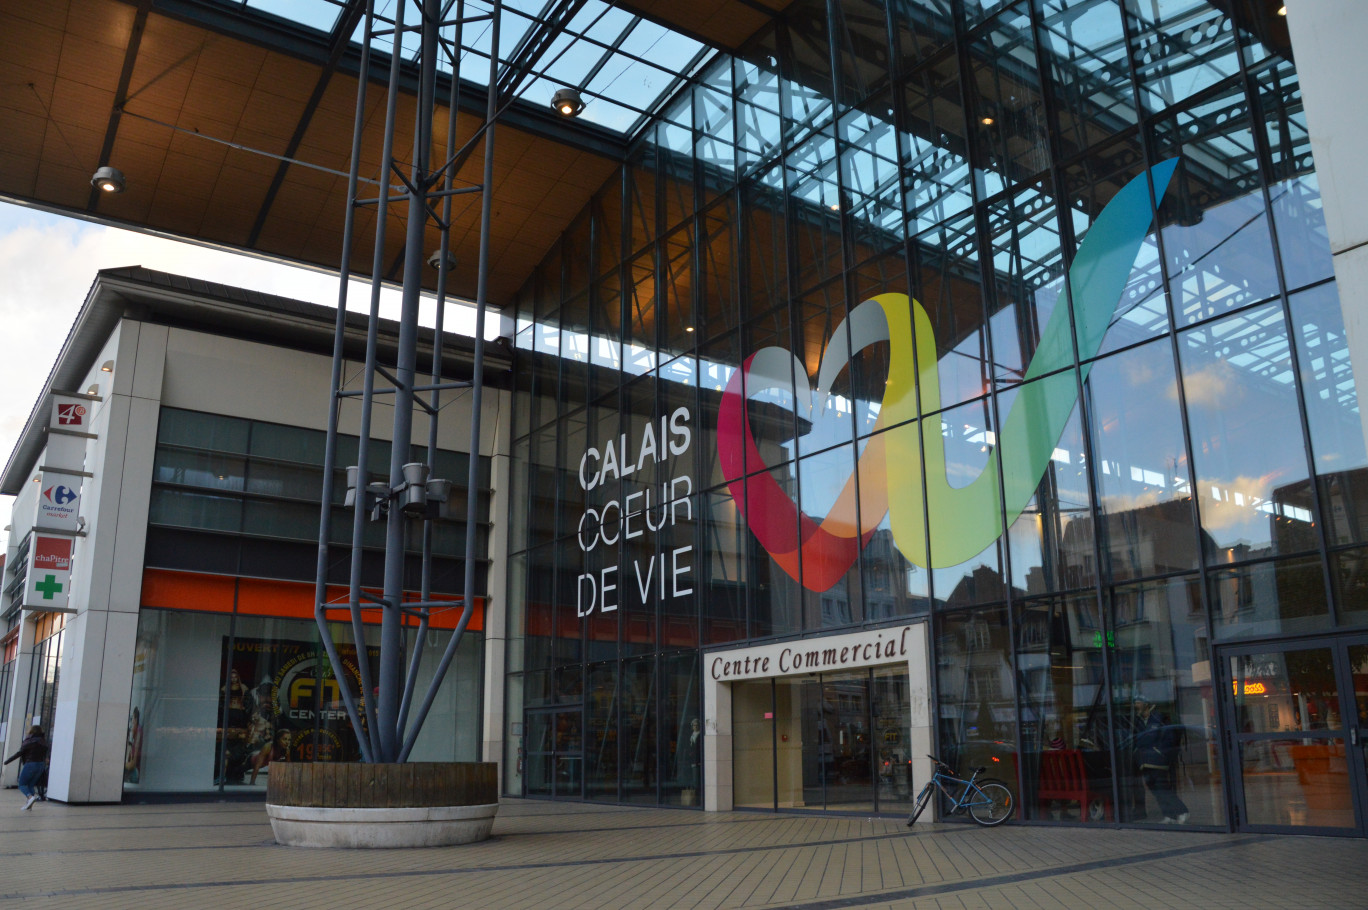 Une des premières implantations de Tchooss s'est faite dans Calais Coeur de Vie, gallerie commerciale du centre ville.